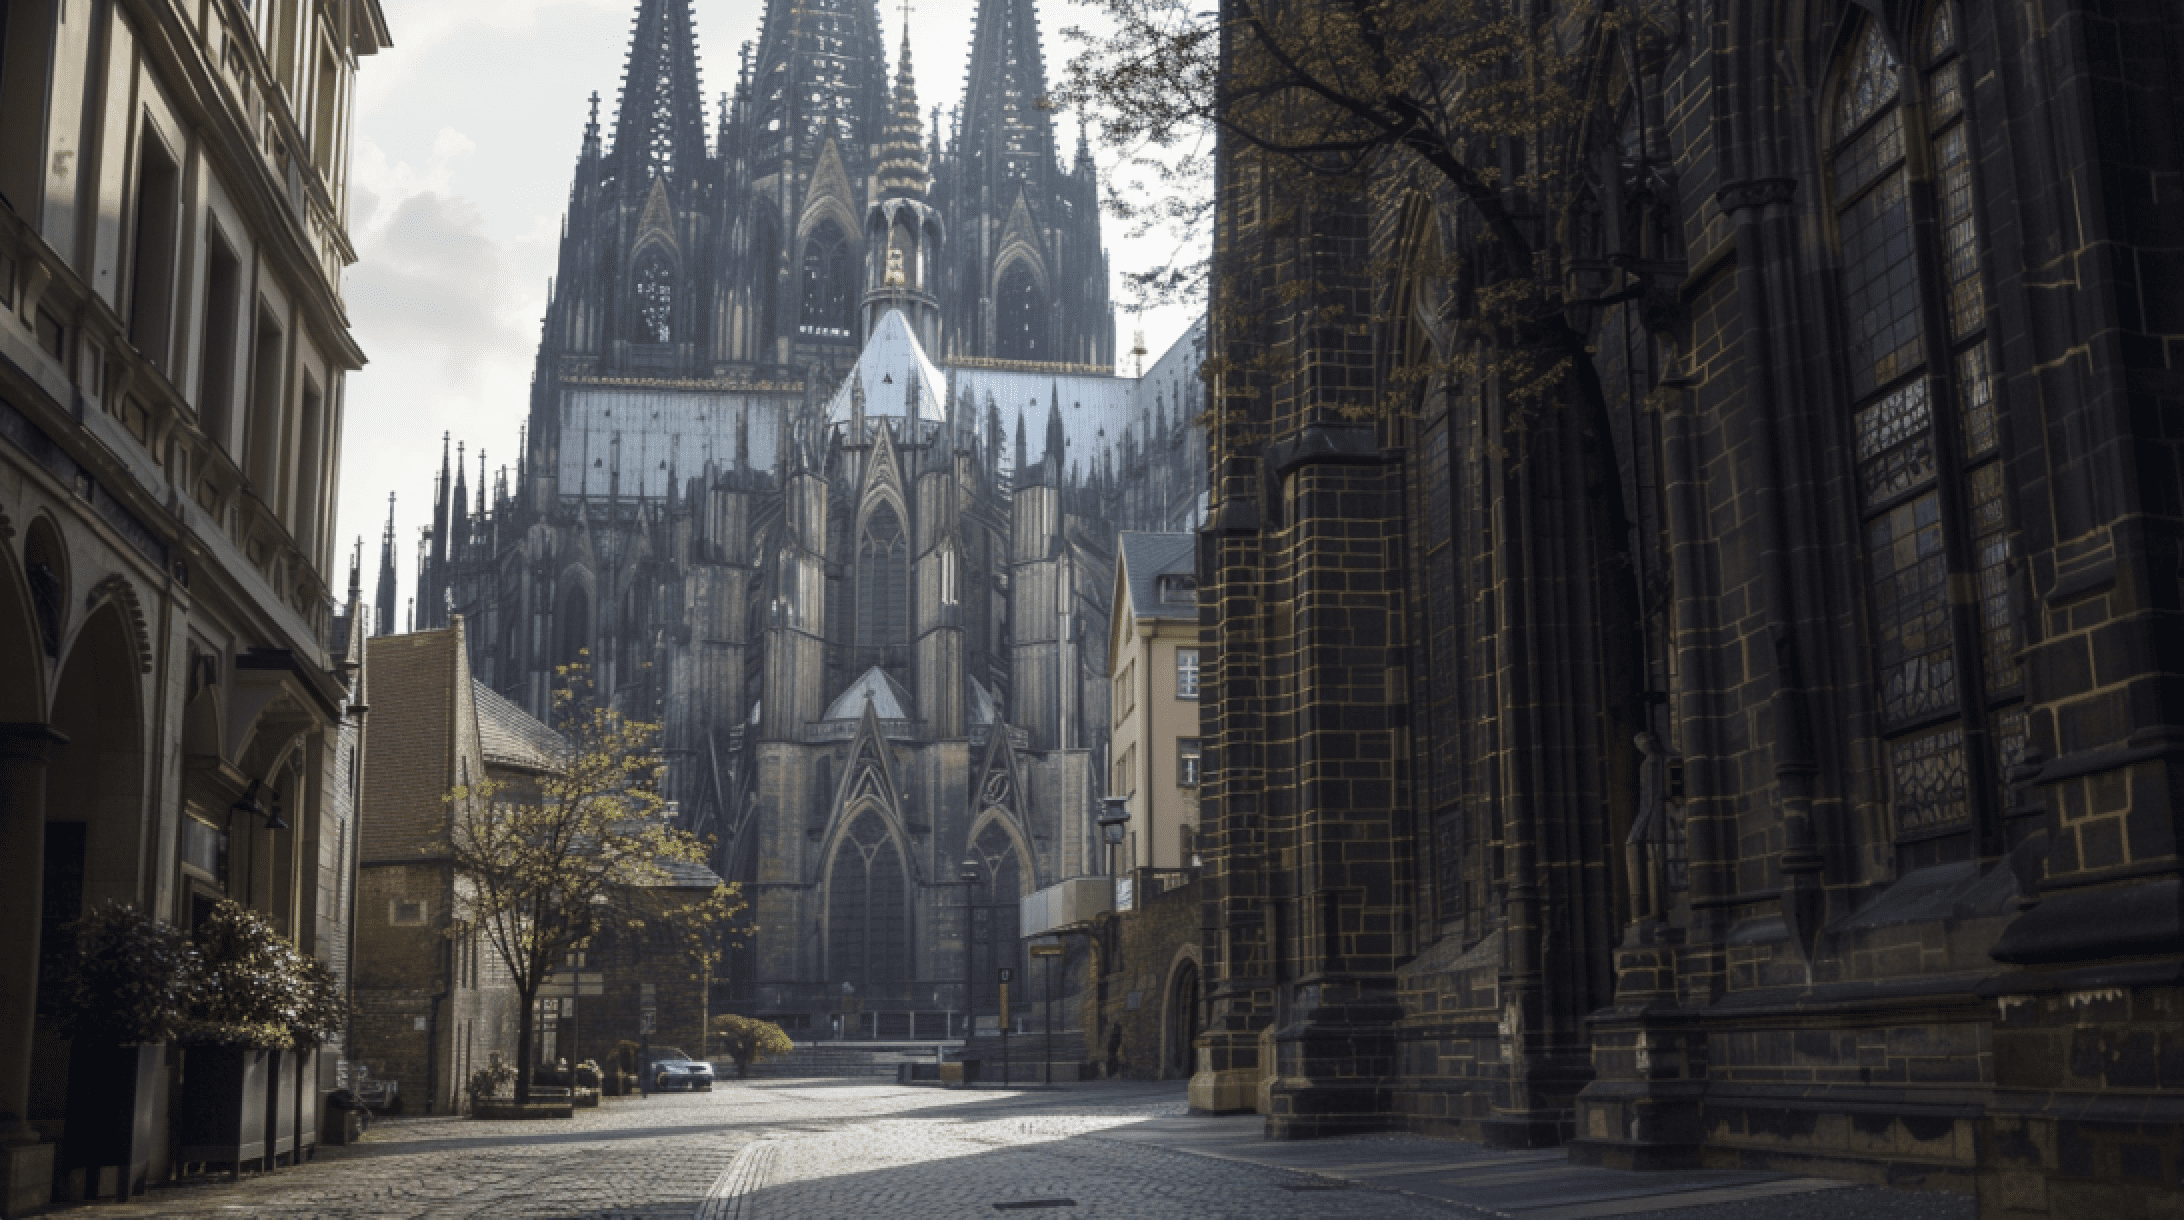 Catedral de Colonia (Köln) en Alemania.